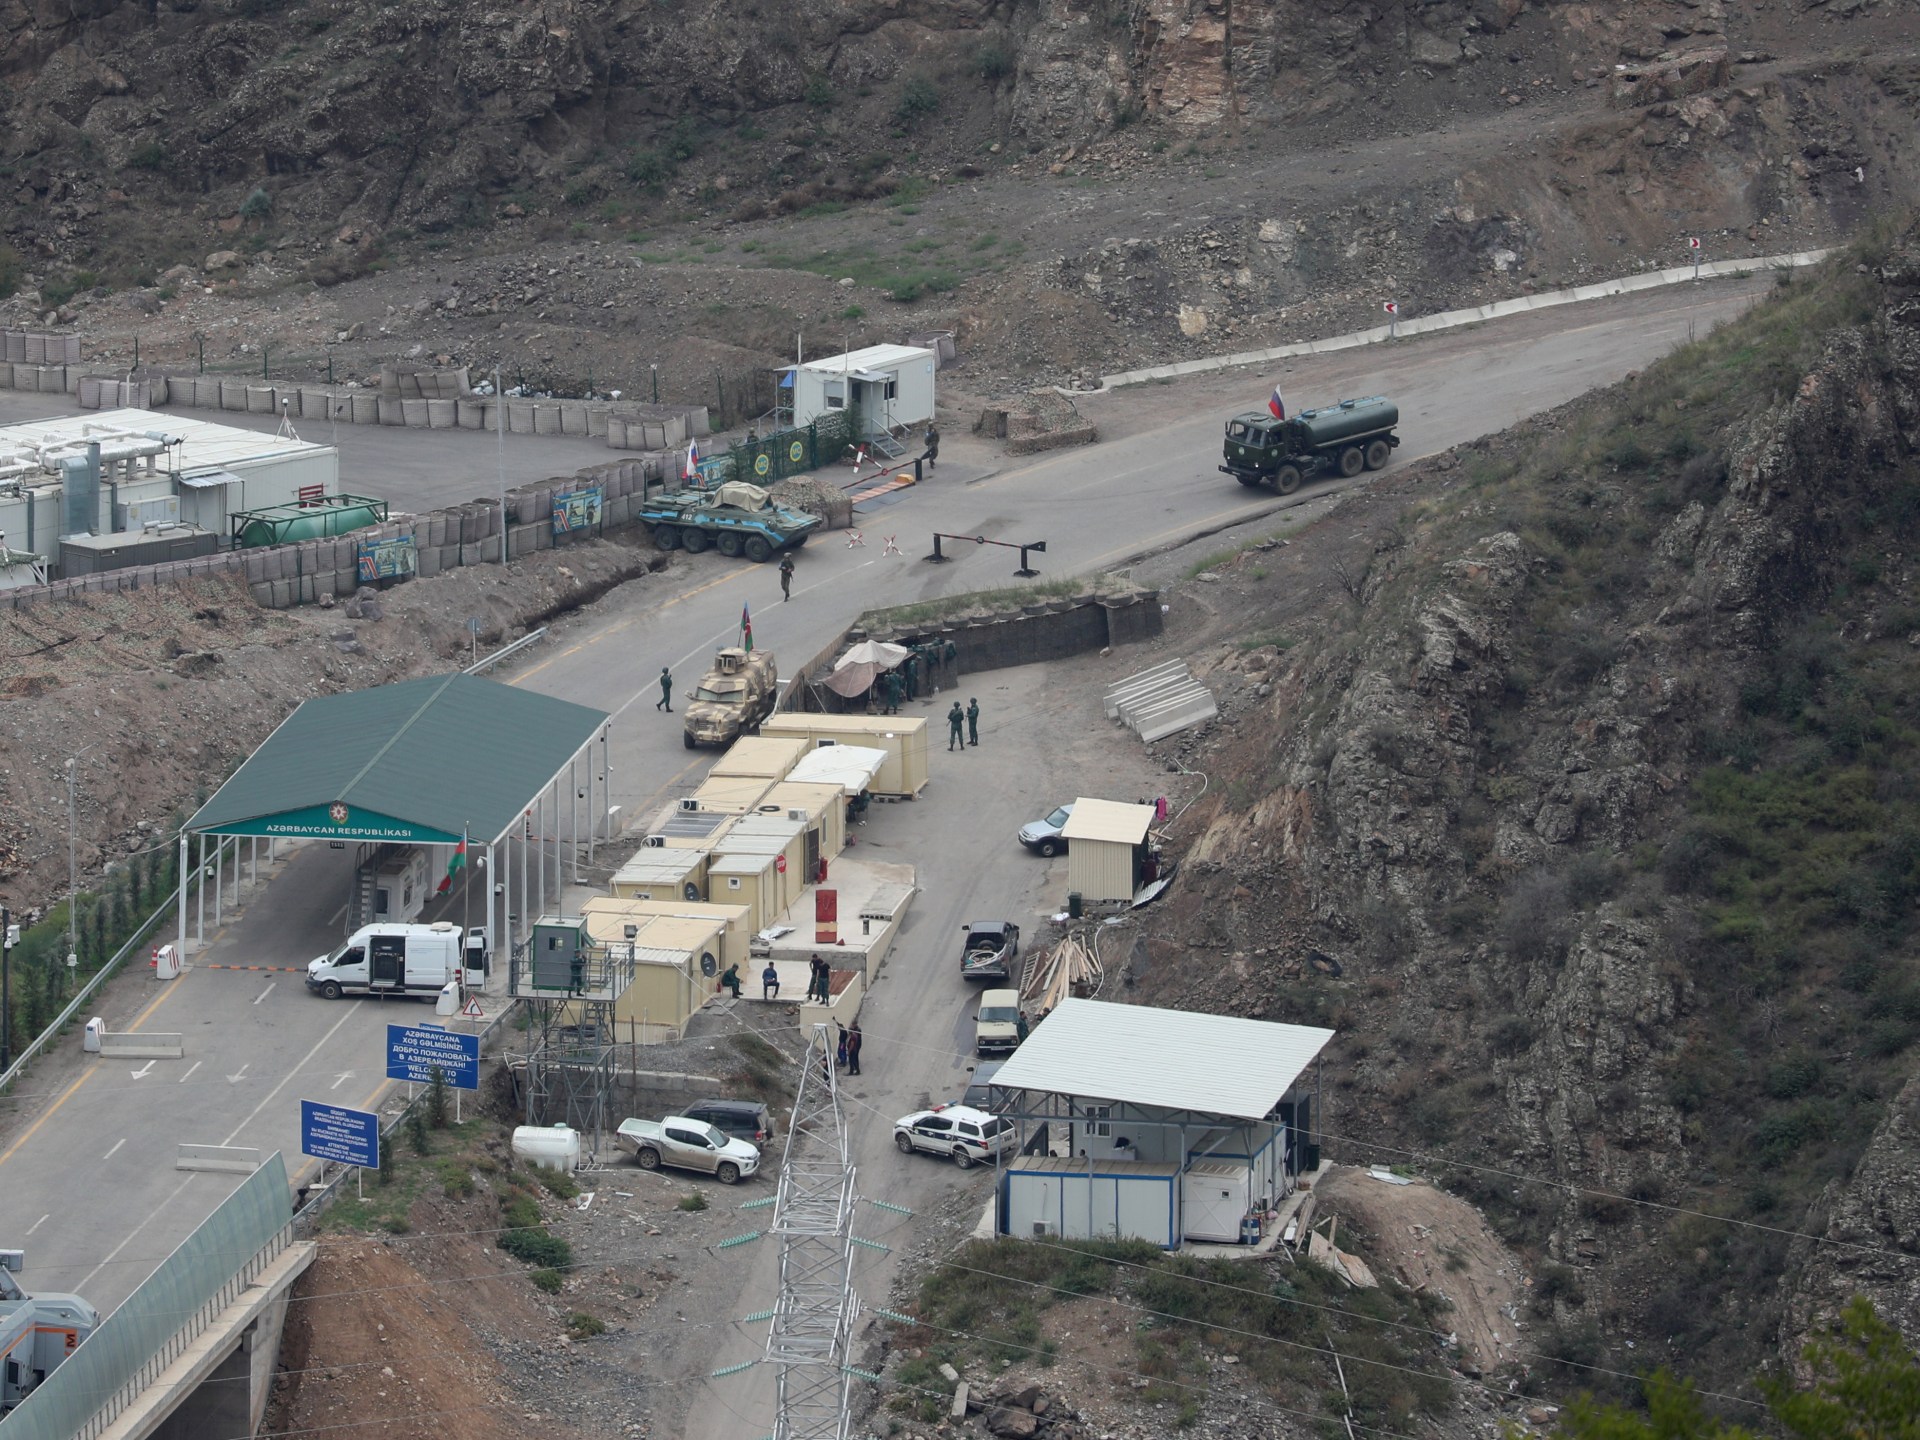 Pomoc dociera do Górskiego Karabachu po złożeniu broni przez ormiańskich separatystów  Aktualności